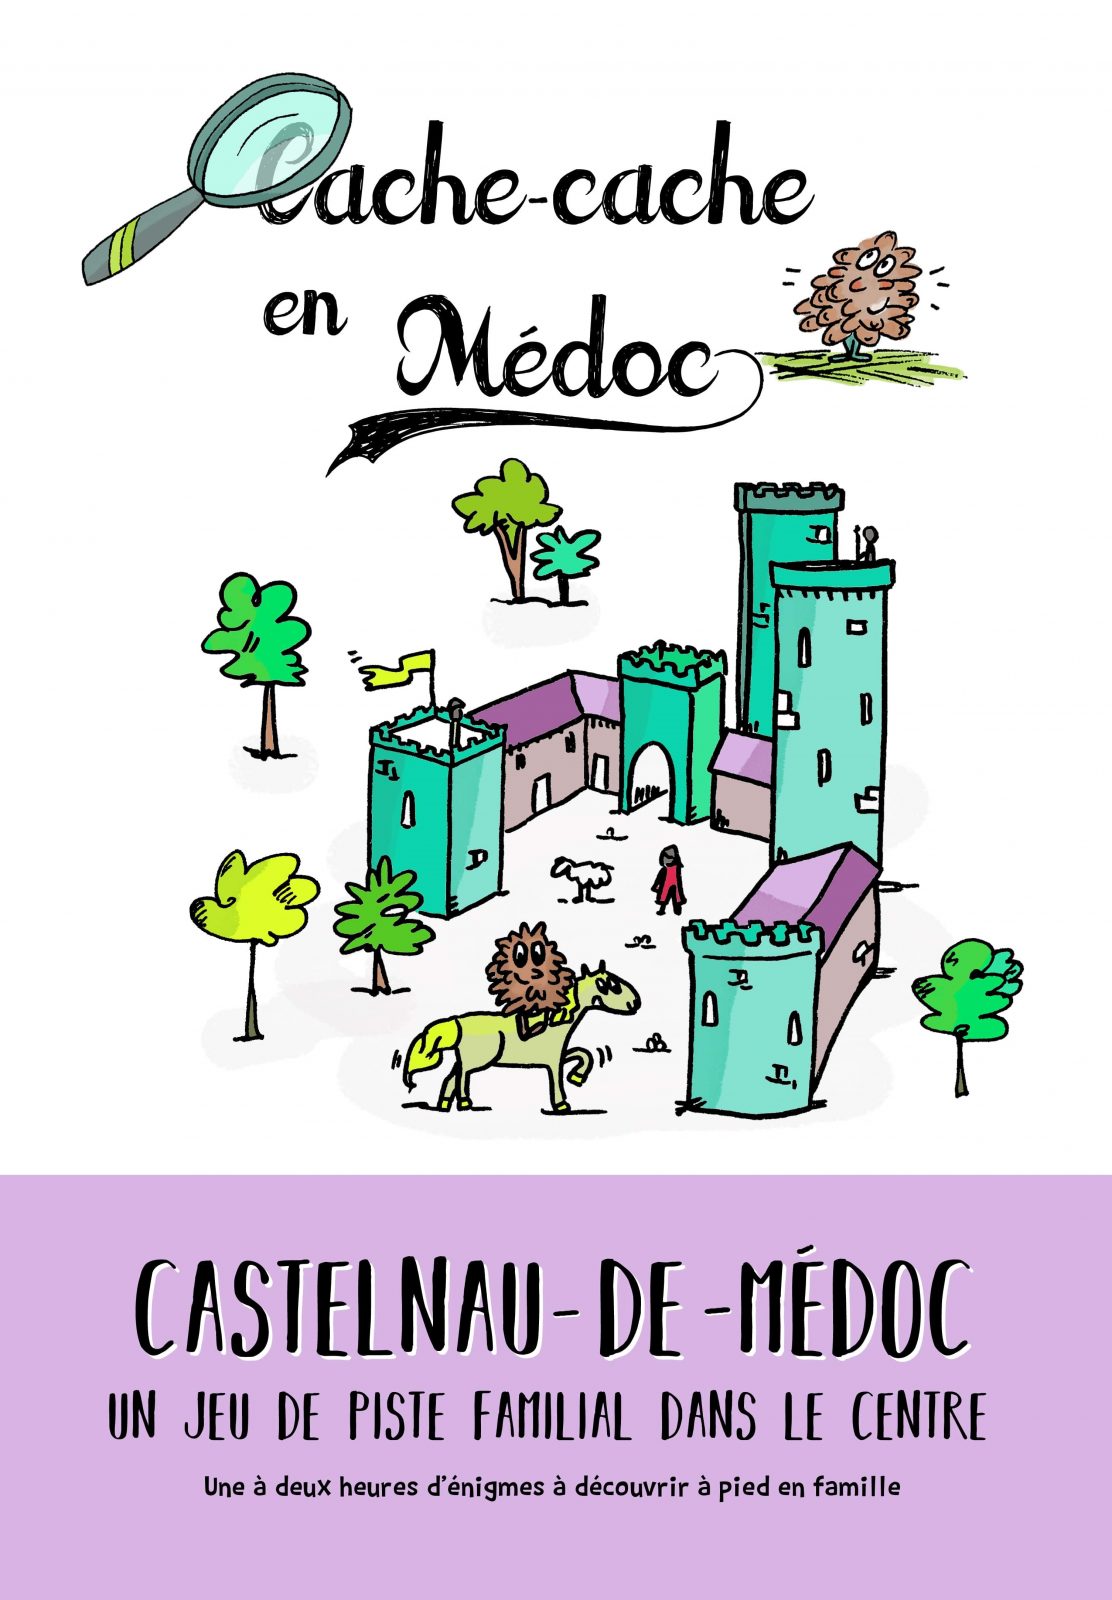 Cache-cache en Médoc à Castelnau-de-Médoc